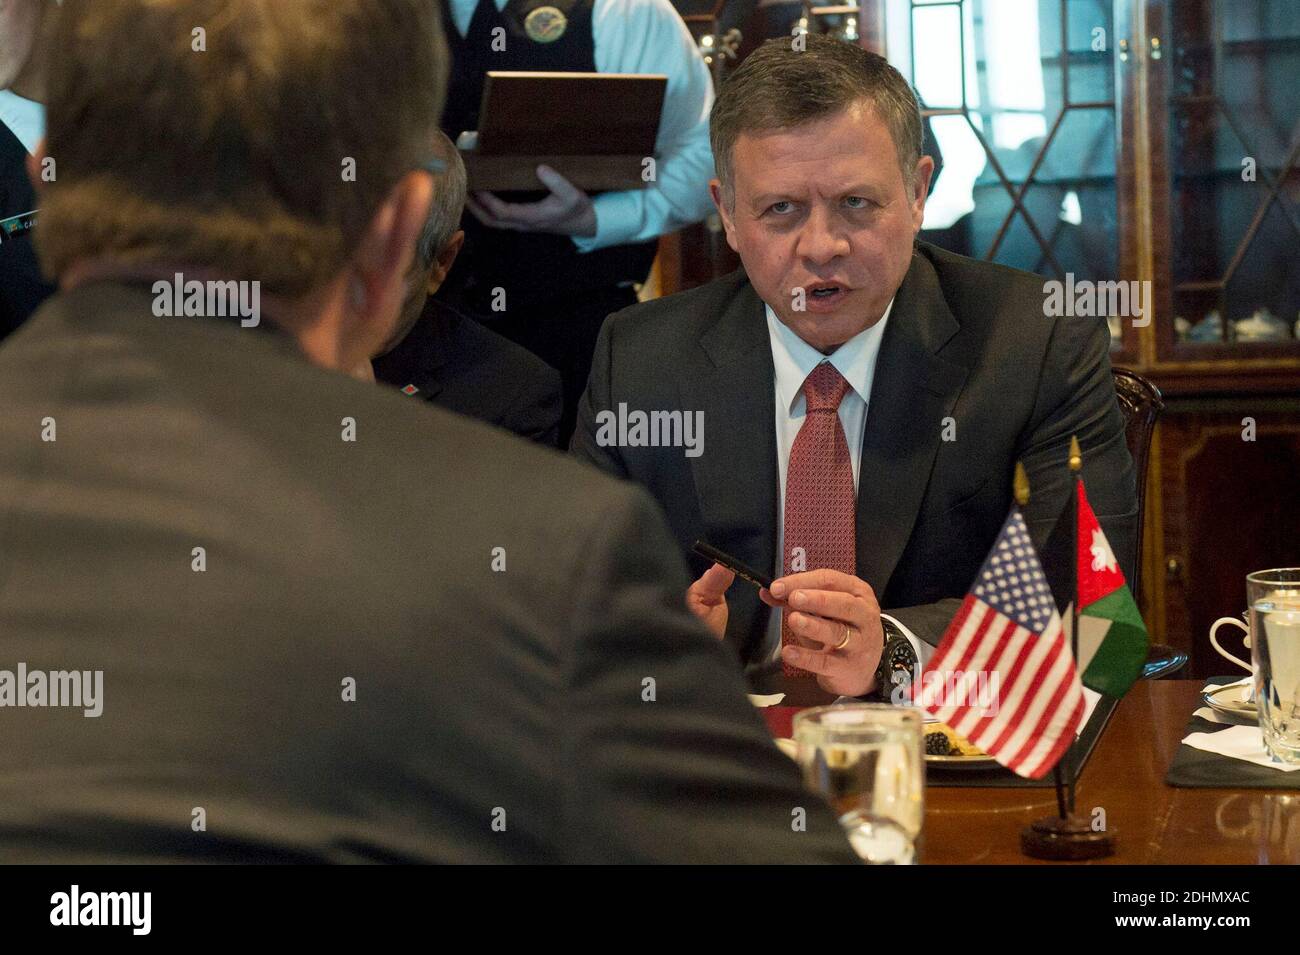 Il re Giordano Abdullah II parla con il segretario alla difesa Ash carter durante un incontro al Pentagono. Arlington, VA, USA, 11 gennaio 2016. Foto di DoD via ABACAPRESS.COM Foto Stock